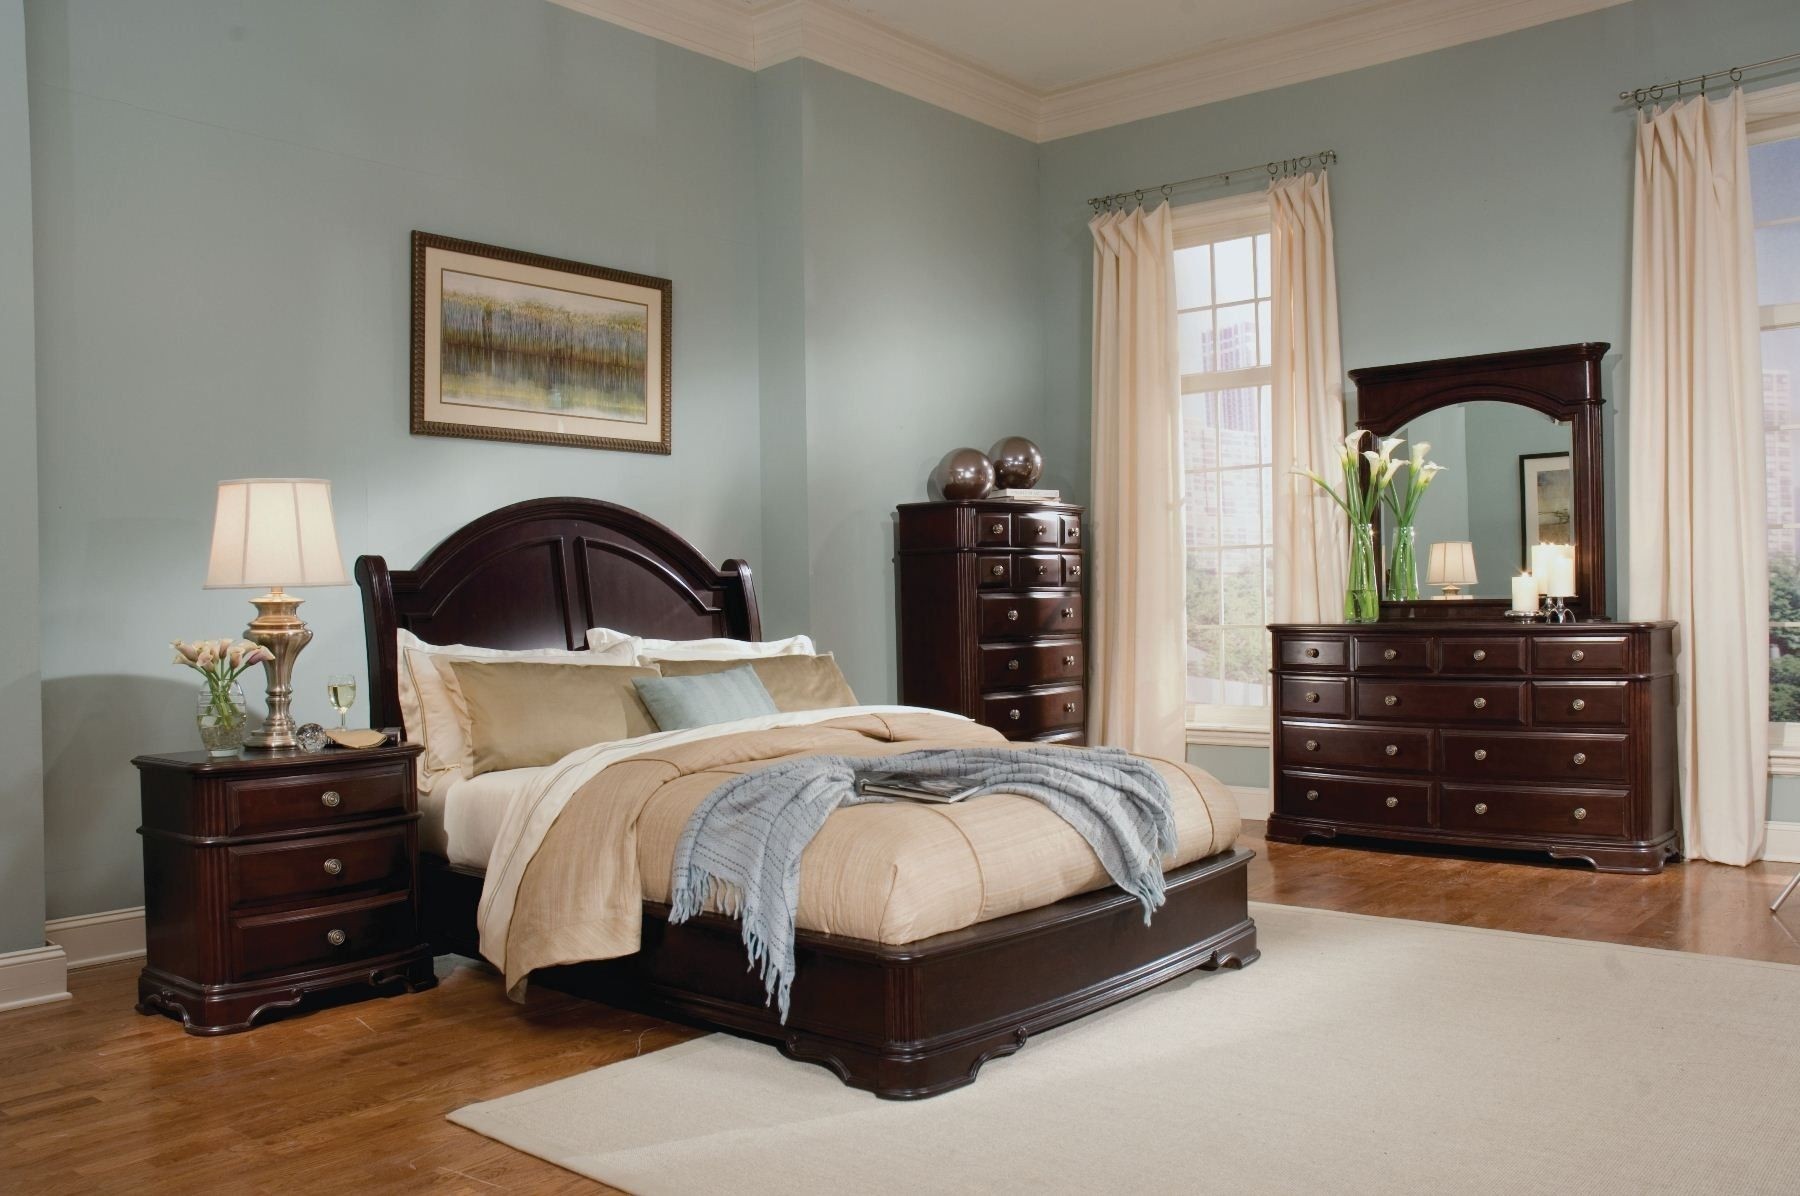 Mahogany bedroom furniture